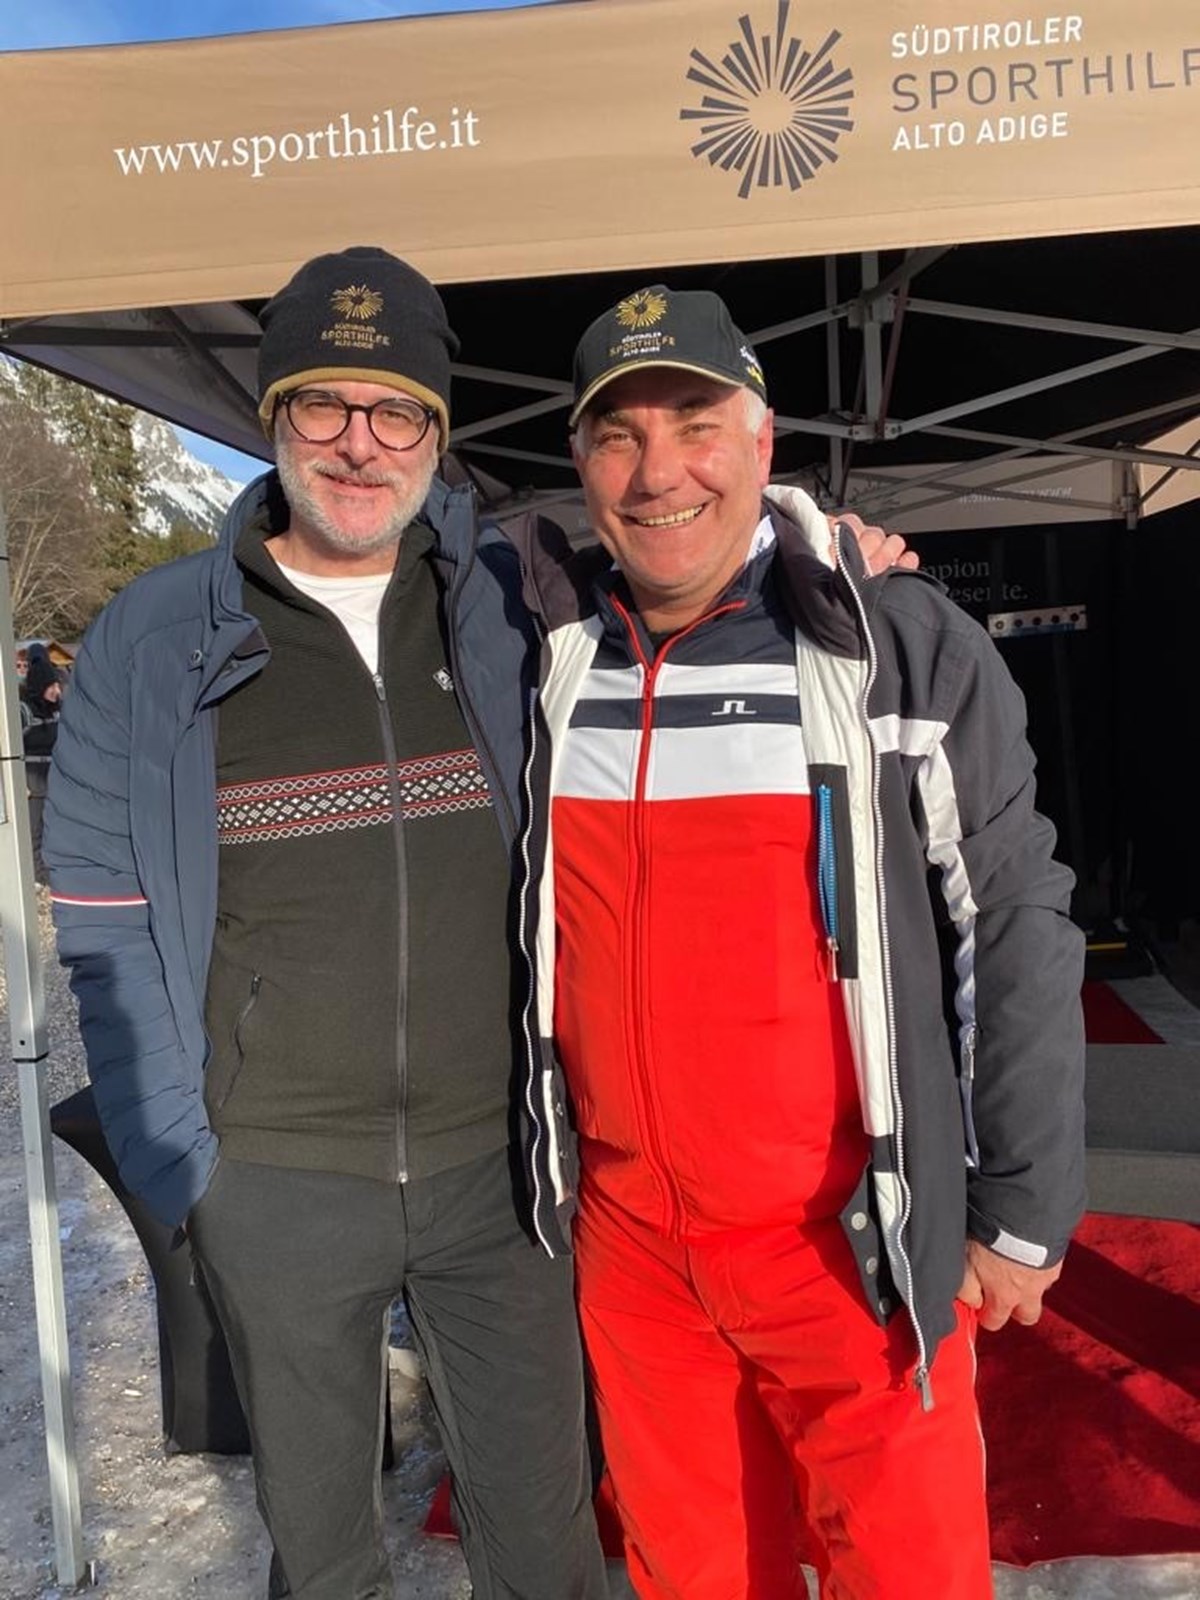 Dr. Alexander Gardetto mit Stefan Leitner am Sporthilfe Stand bei der Biathlon WM in Antholz